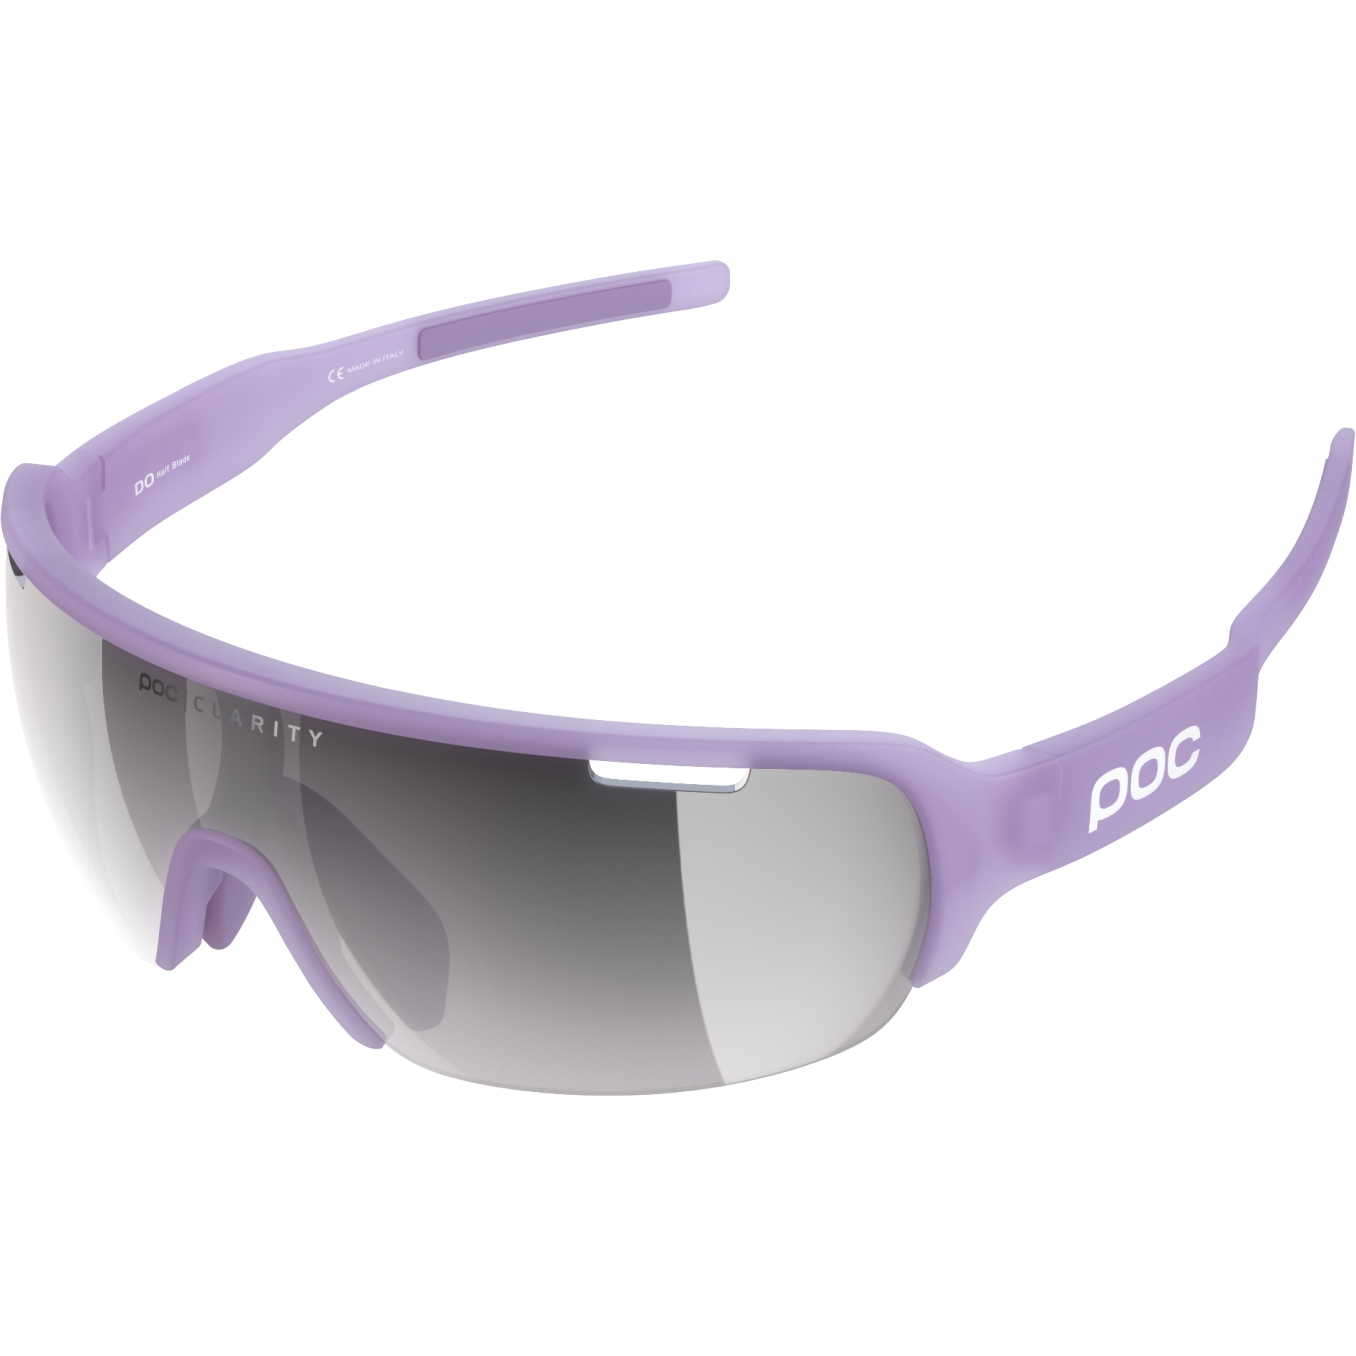 Produktbild von POC DO Half Blade Brille - Mirror Lens - 1619 Purple Quartz Translucent / Violet/Silver 10.0